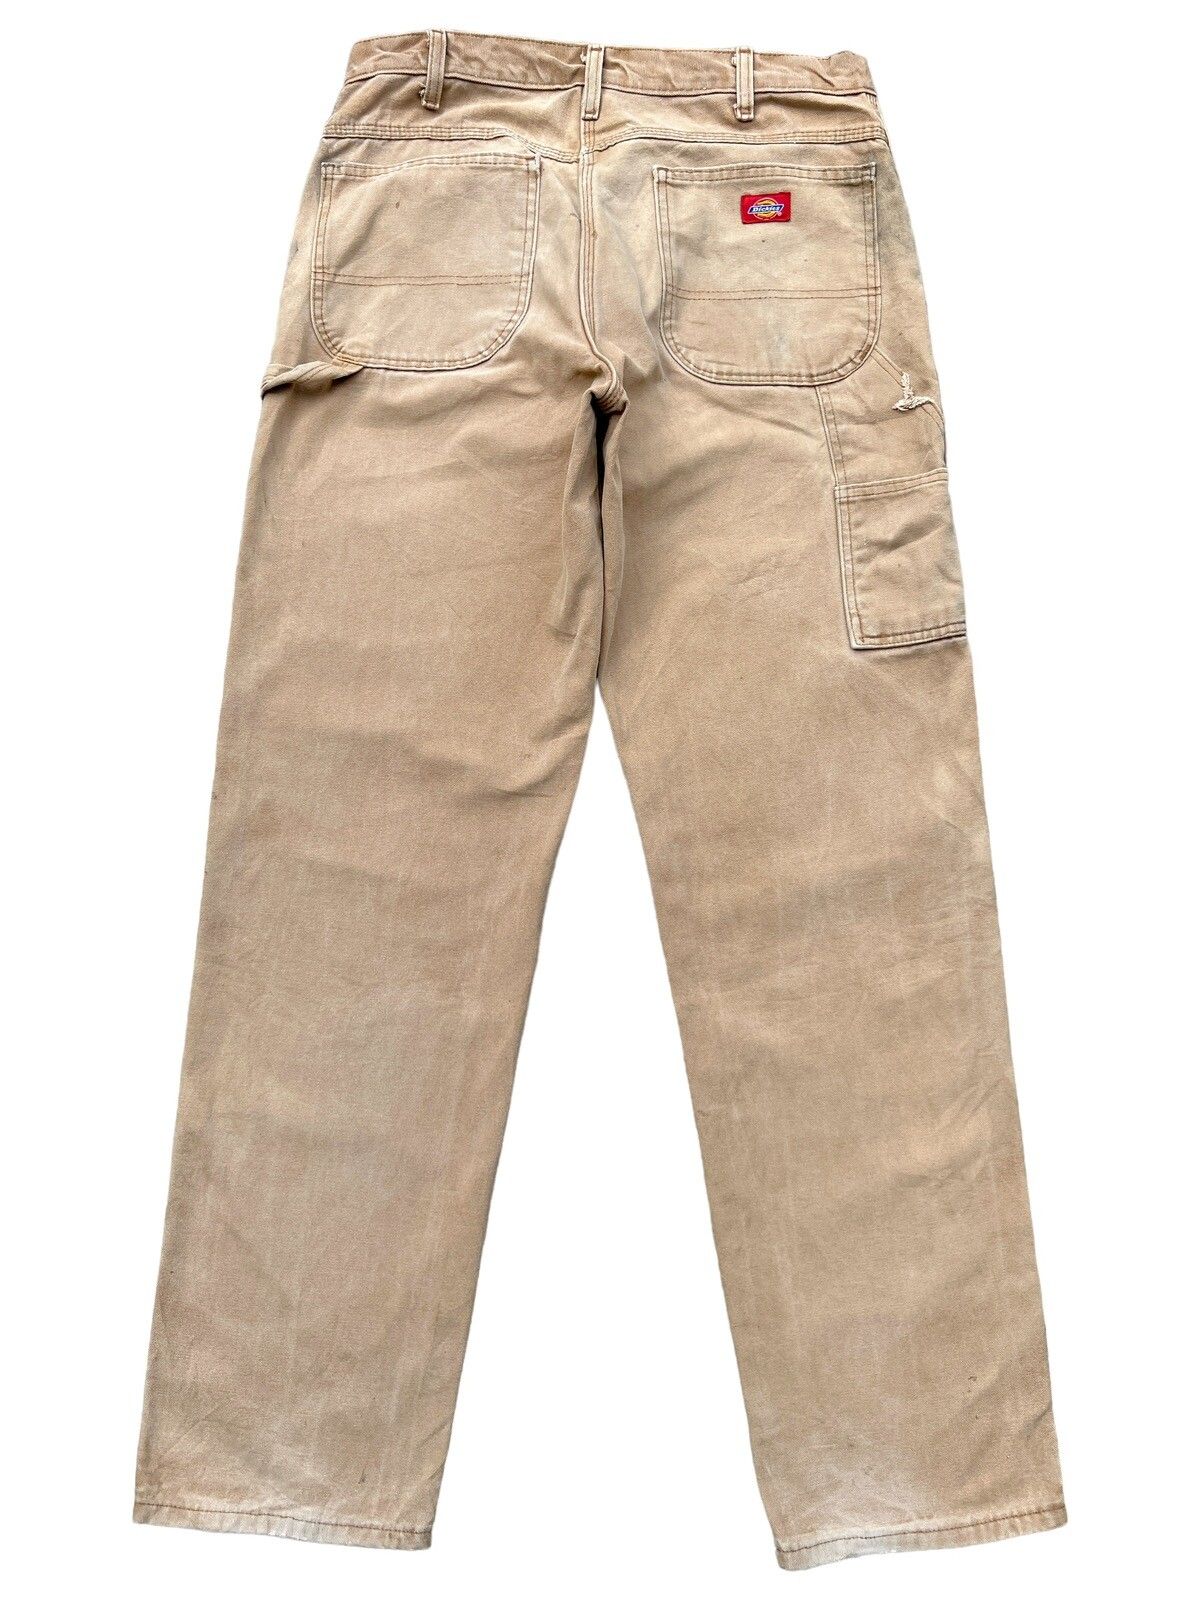 Vintage 90s Dickies Workwear Faded Distressed Baggy Pants - 3